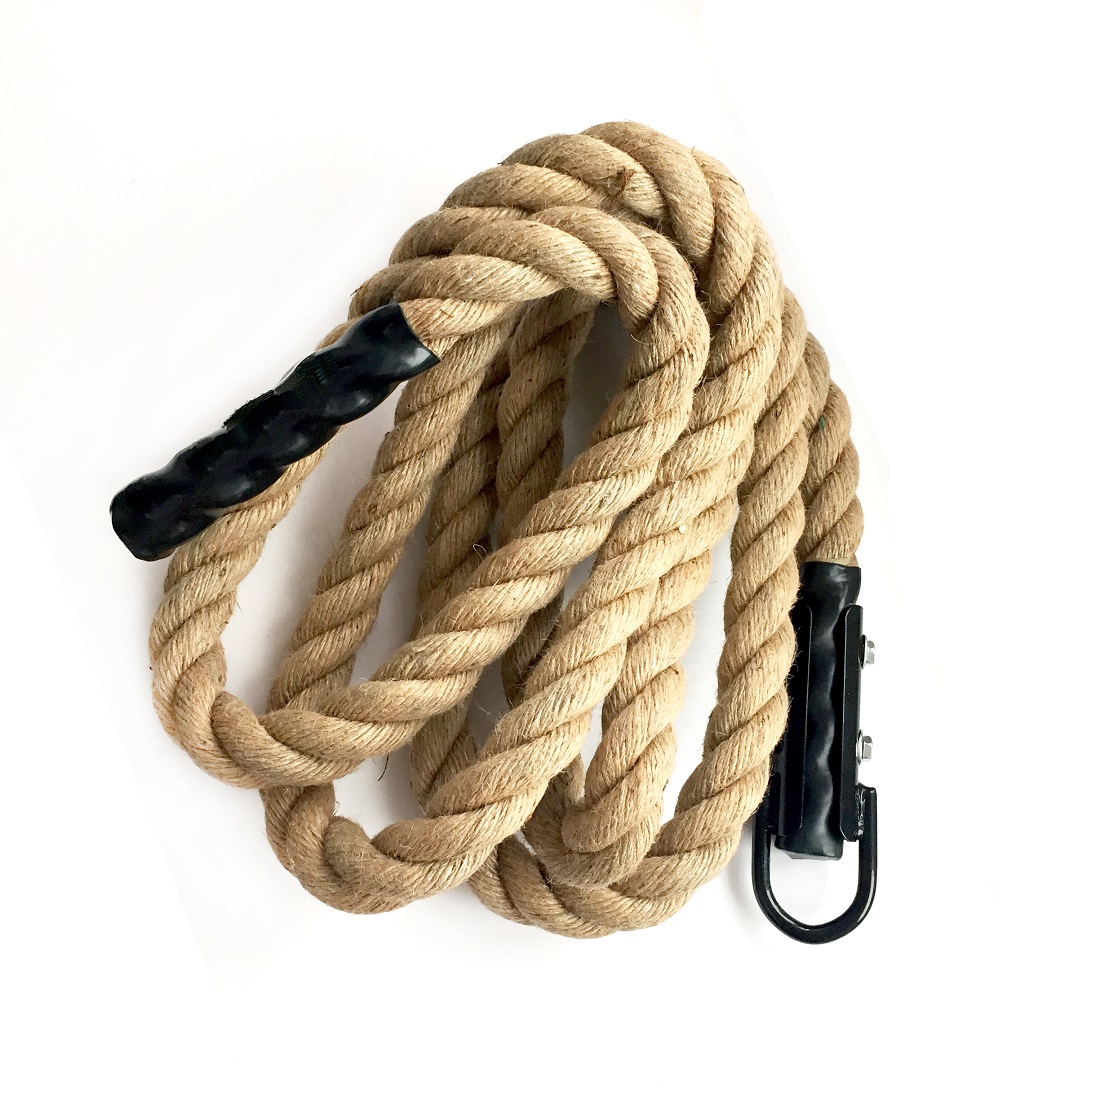 Corde à grimper - Climb rope 6m